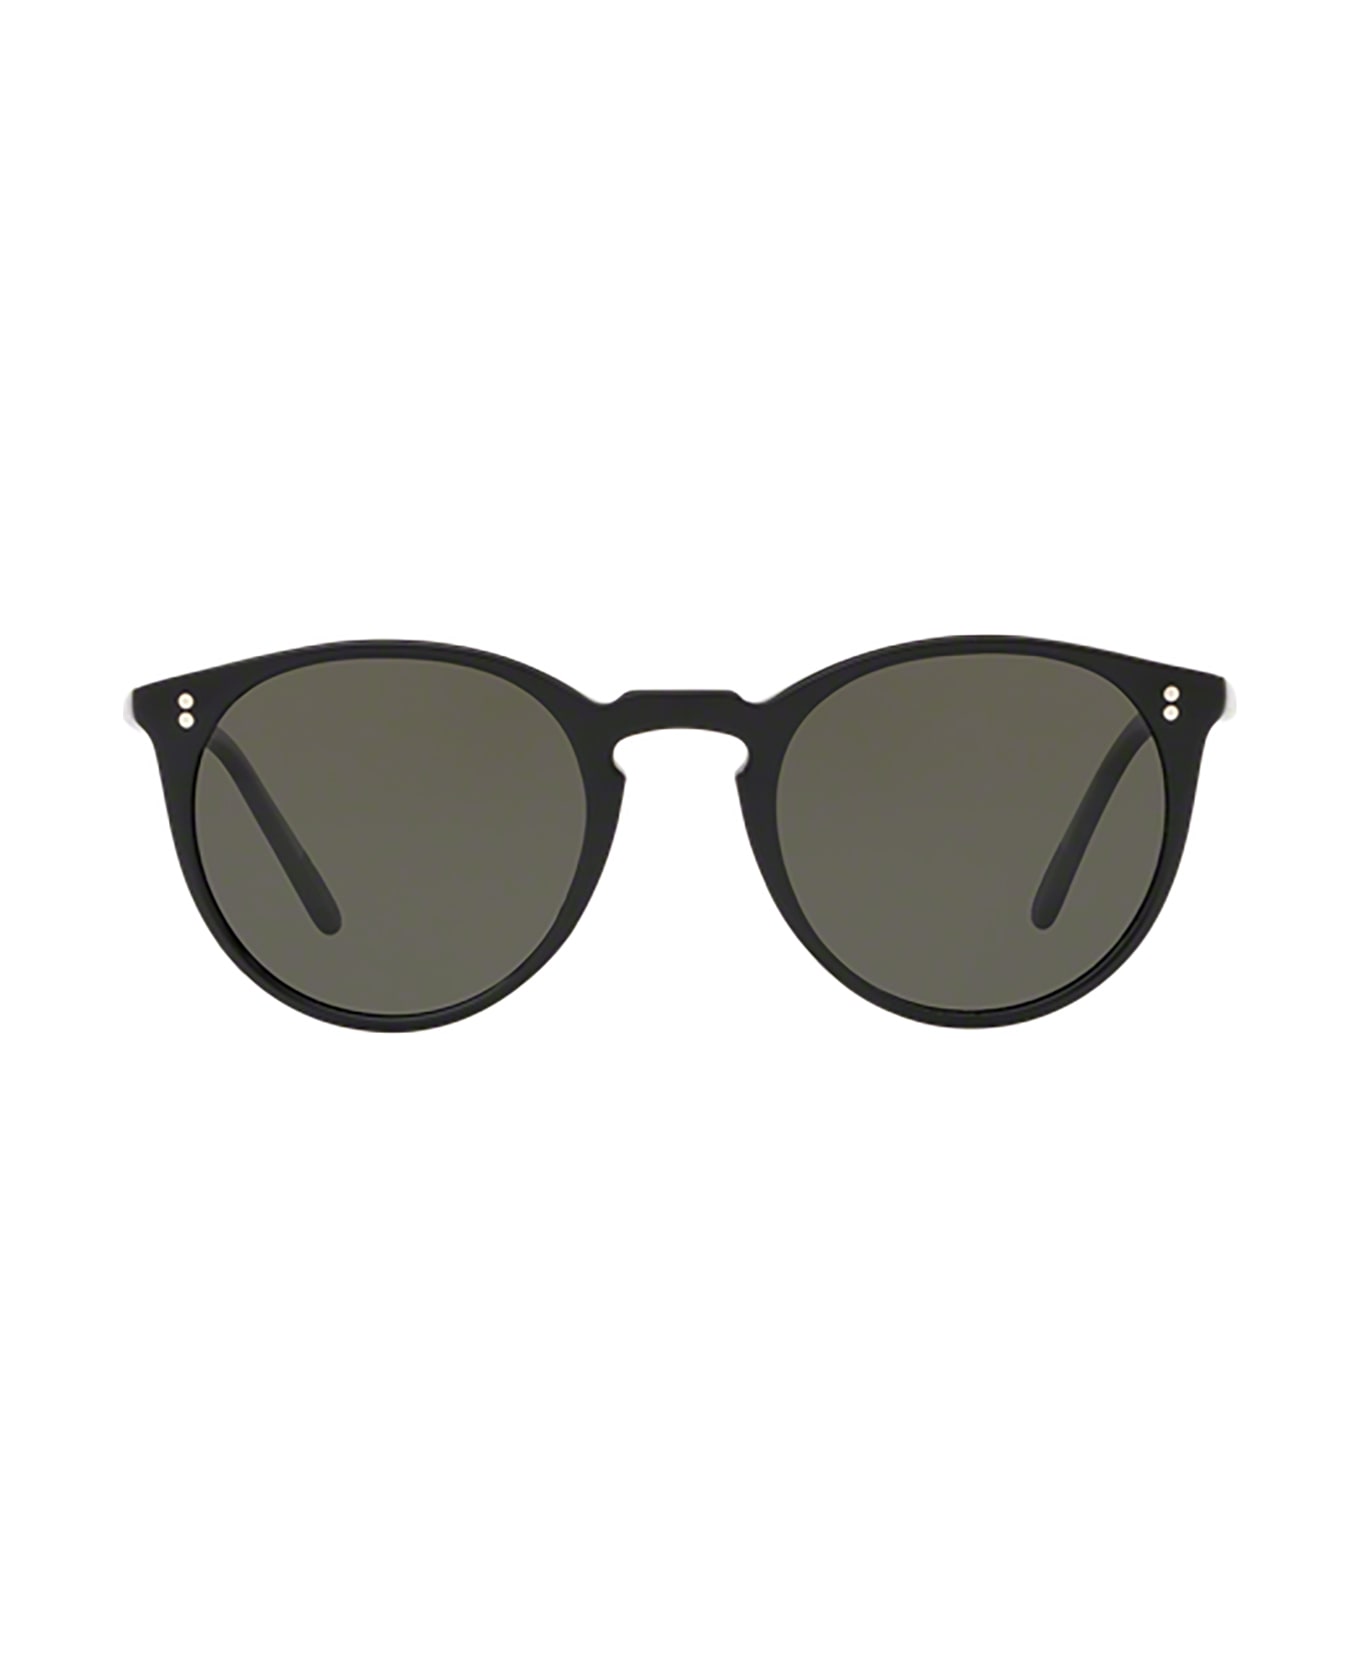 Oliver Peoples Ov5183s Black Sunglasses - Black